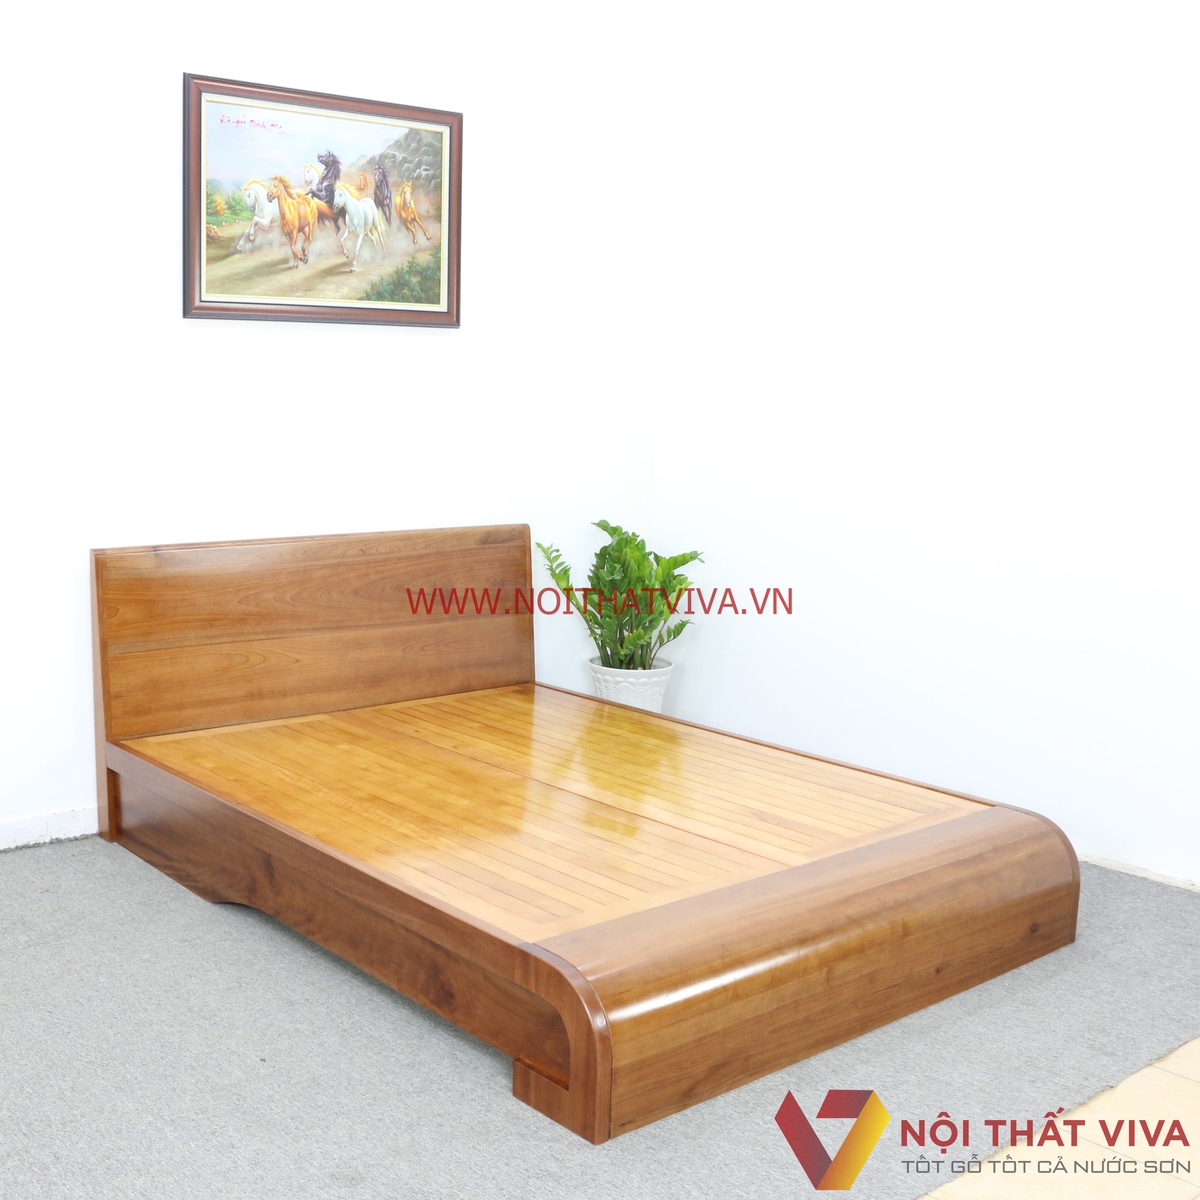 giá giường ngủ gỗ xoan đào